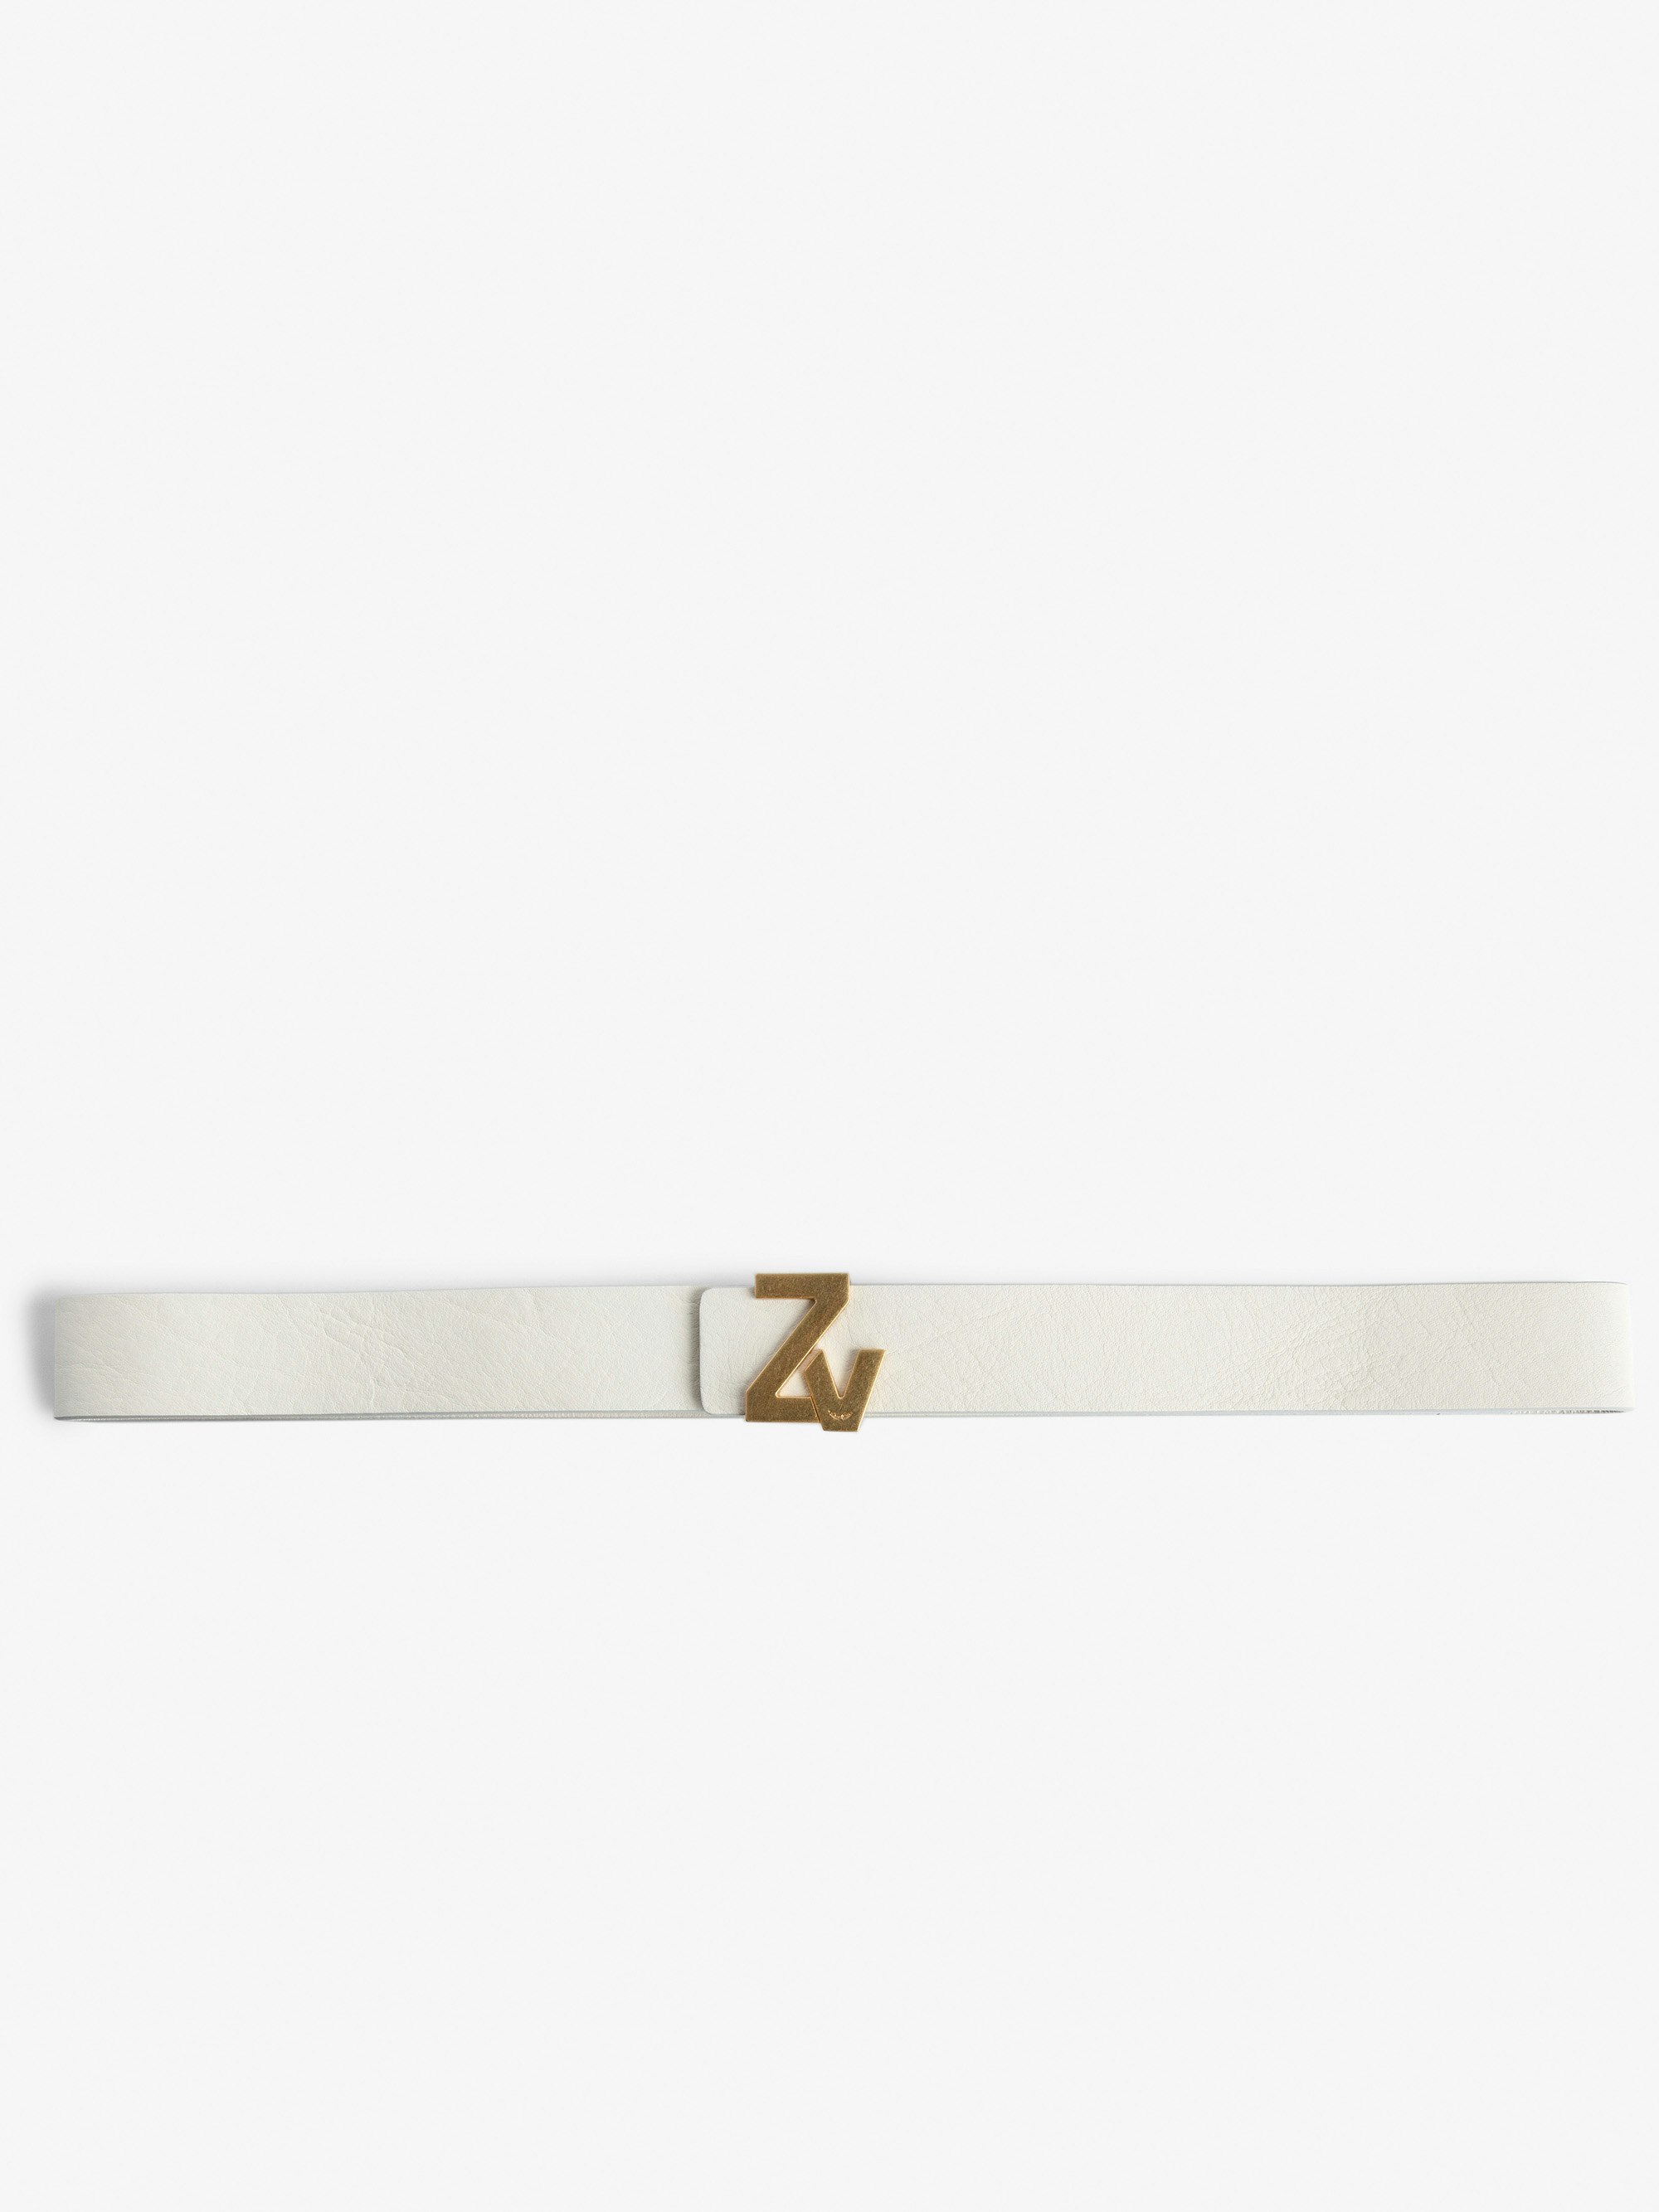 ZV Initiale La Belt - Women's belt in ecru leather with gold-tone ZV buckle.